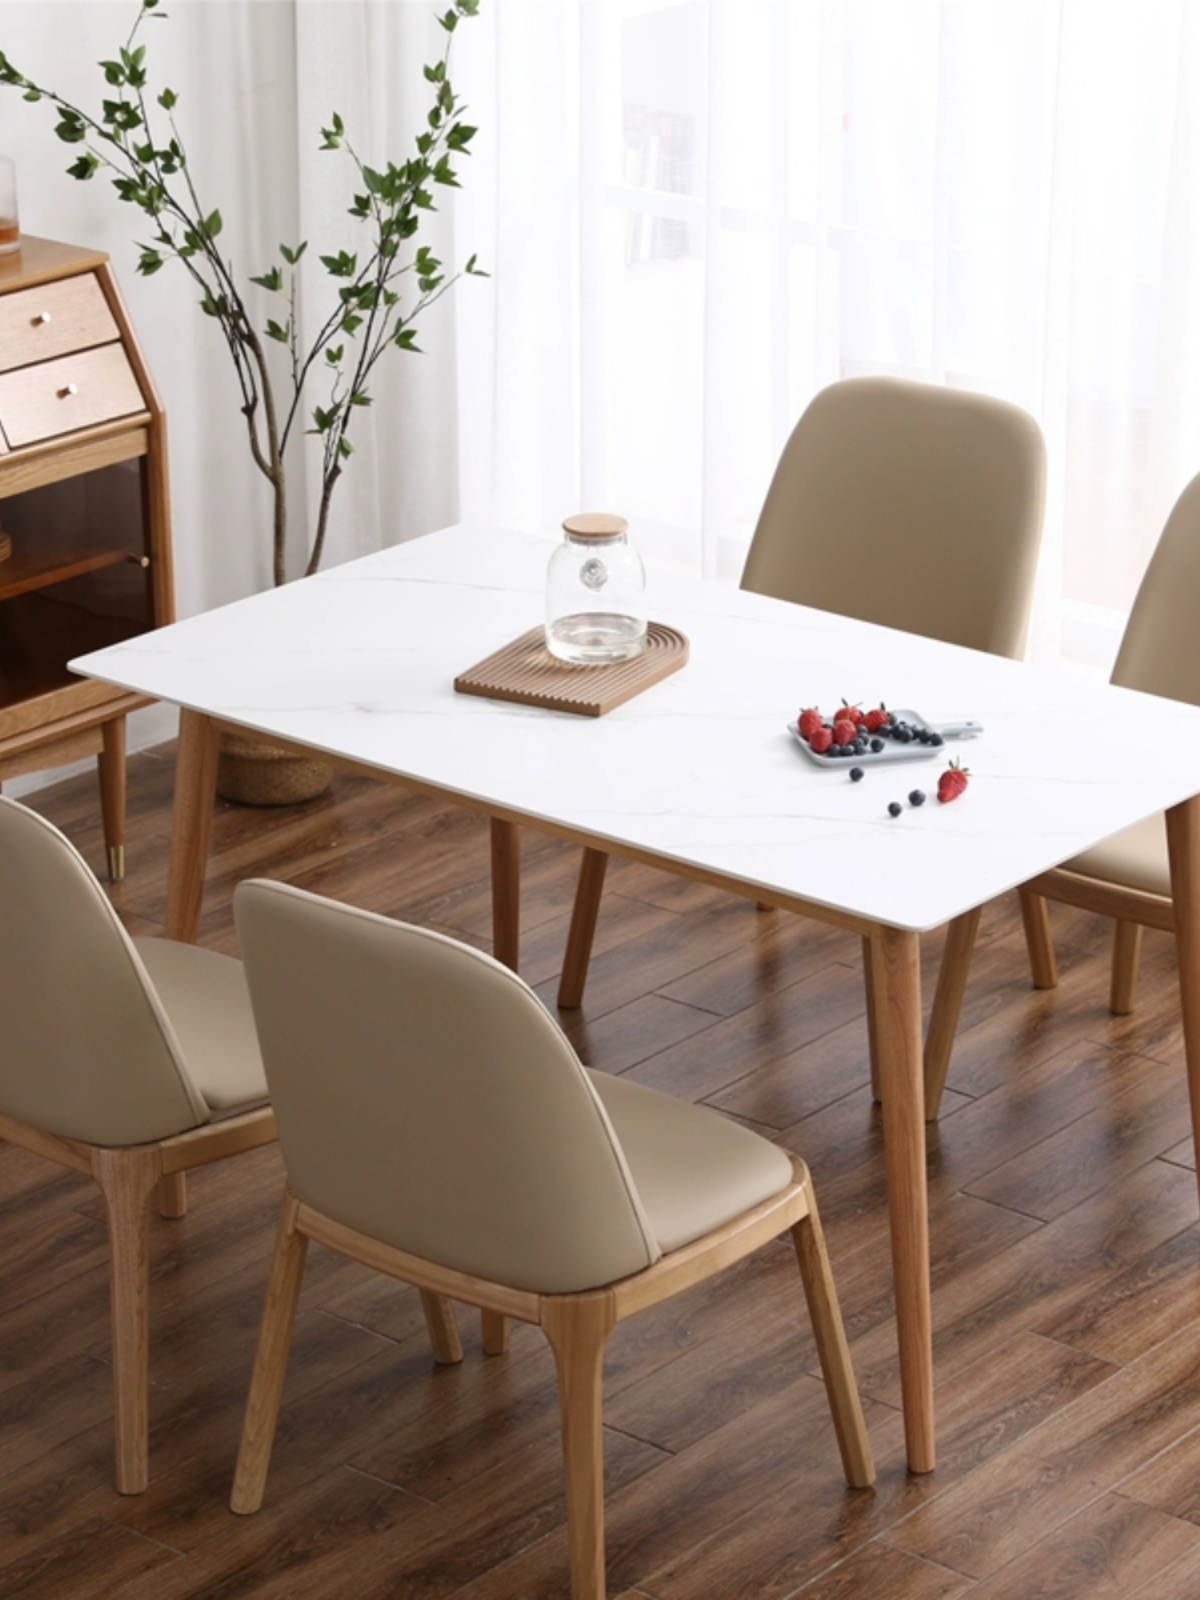 北欧日式岩板餐桌椅组合长方形实木大理石台面小户型桌子原木色